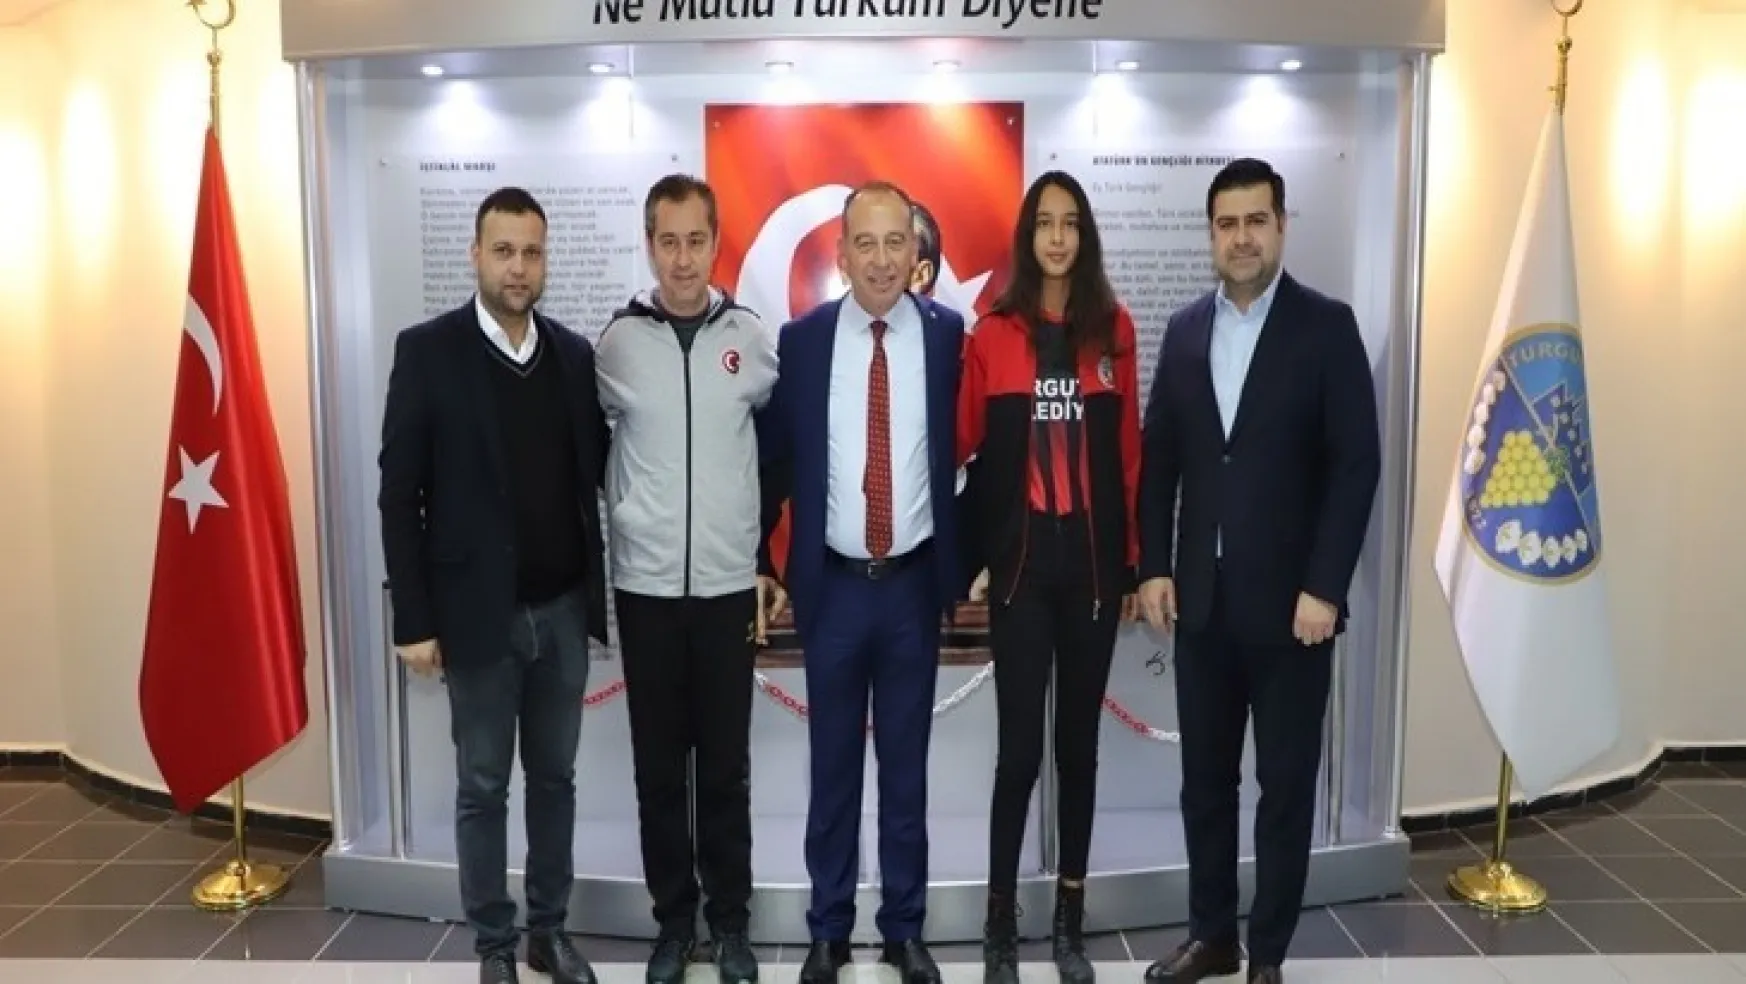 Turgutlu Belediye Basketbol'da Milli Gurur